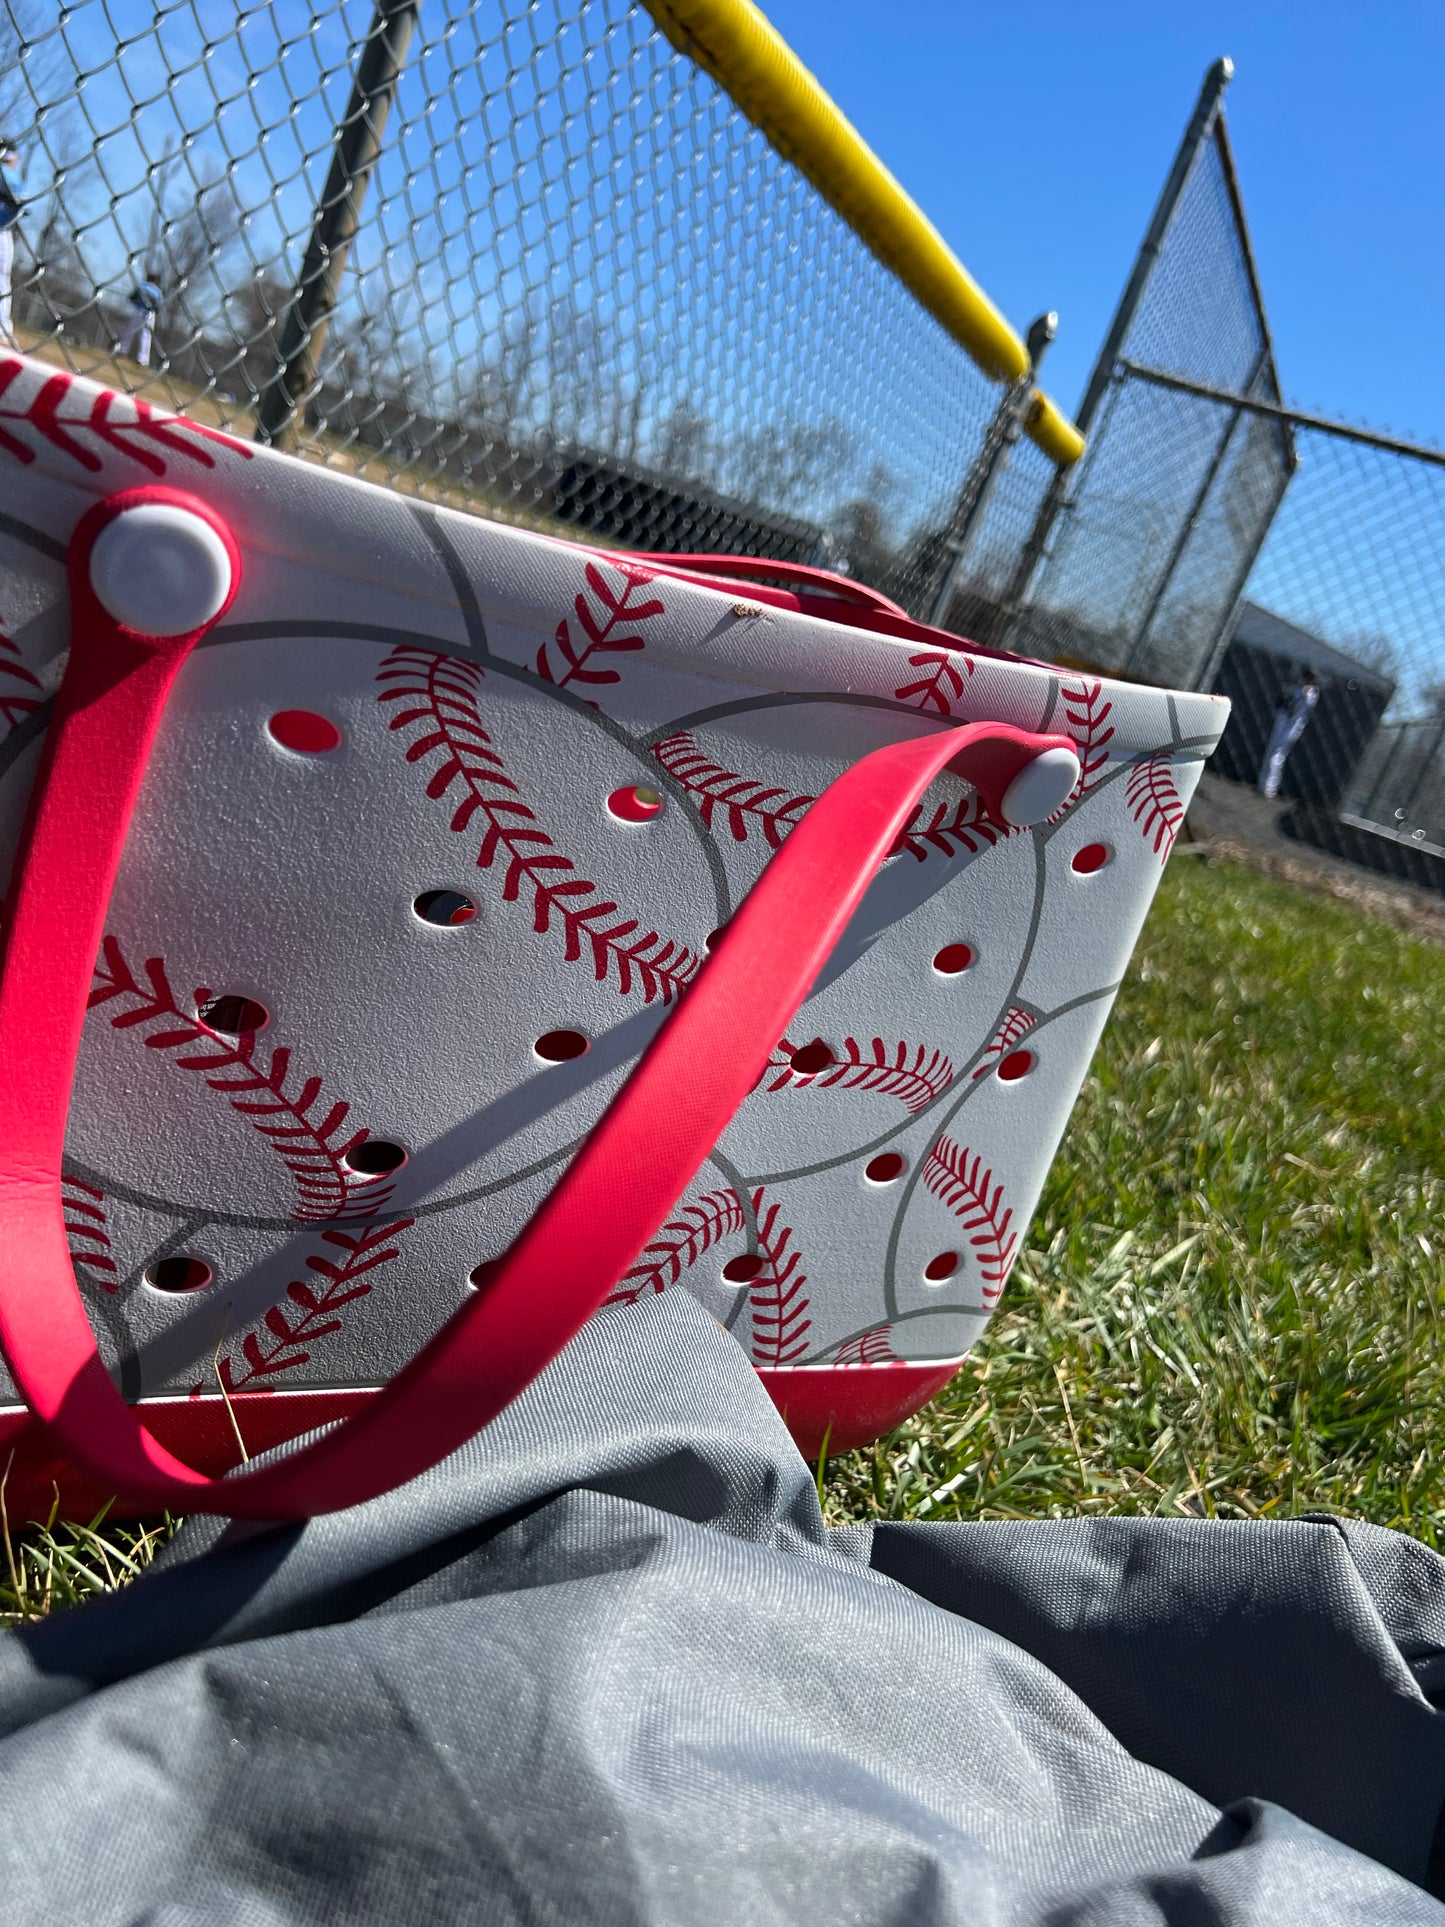 Baseball inspired  Bag